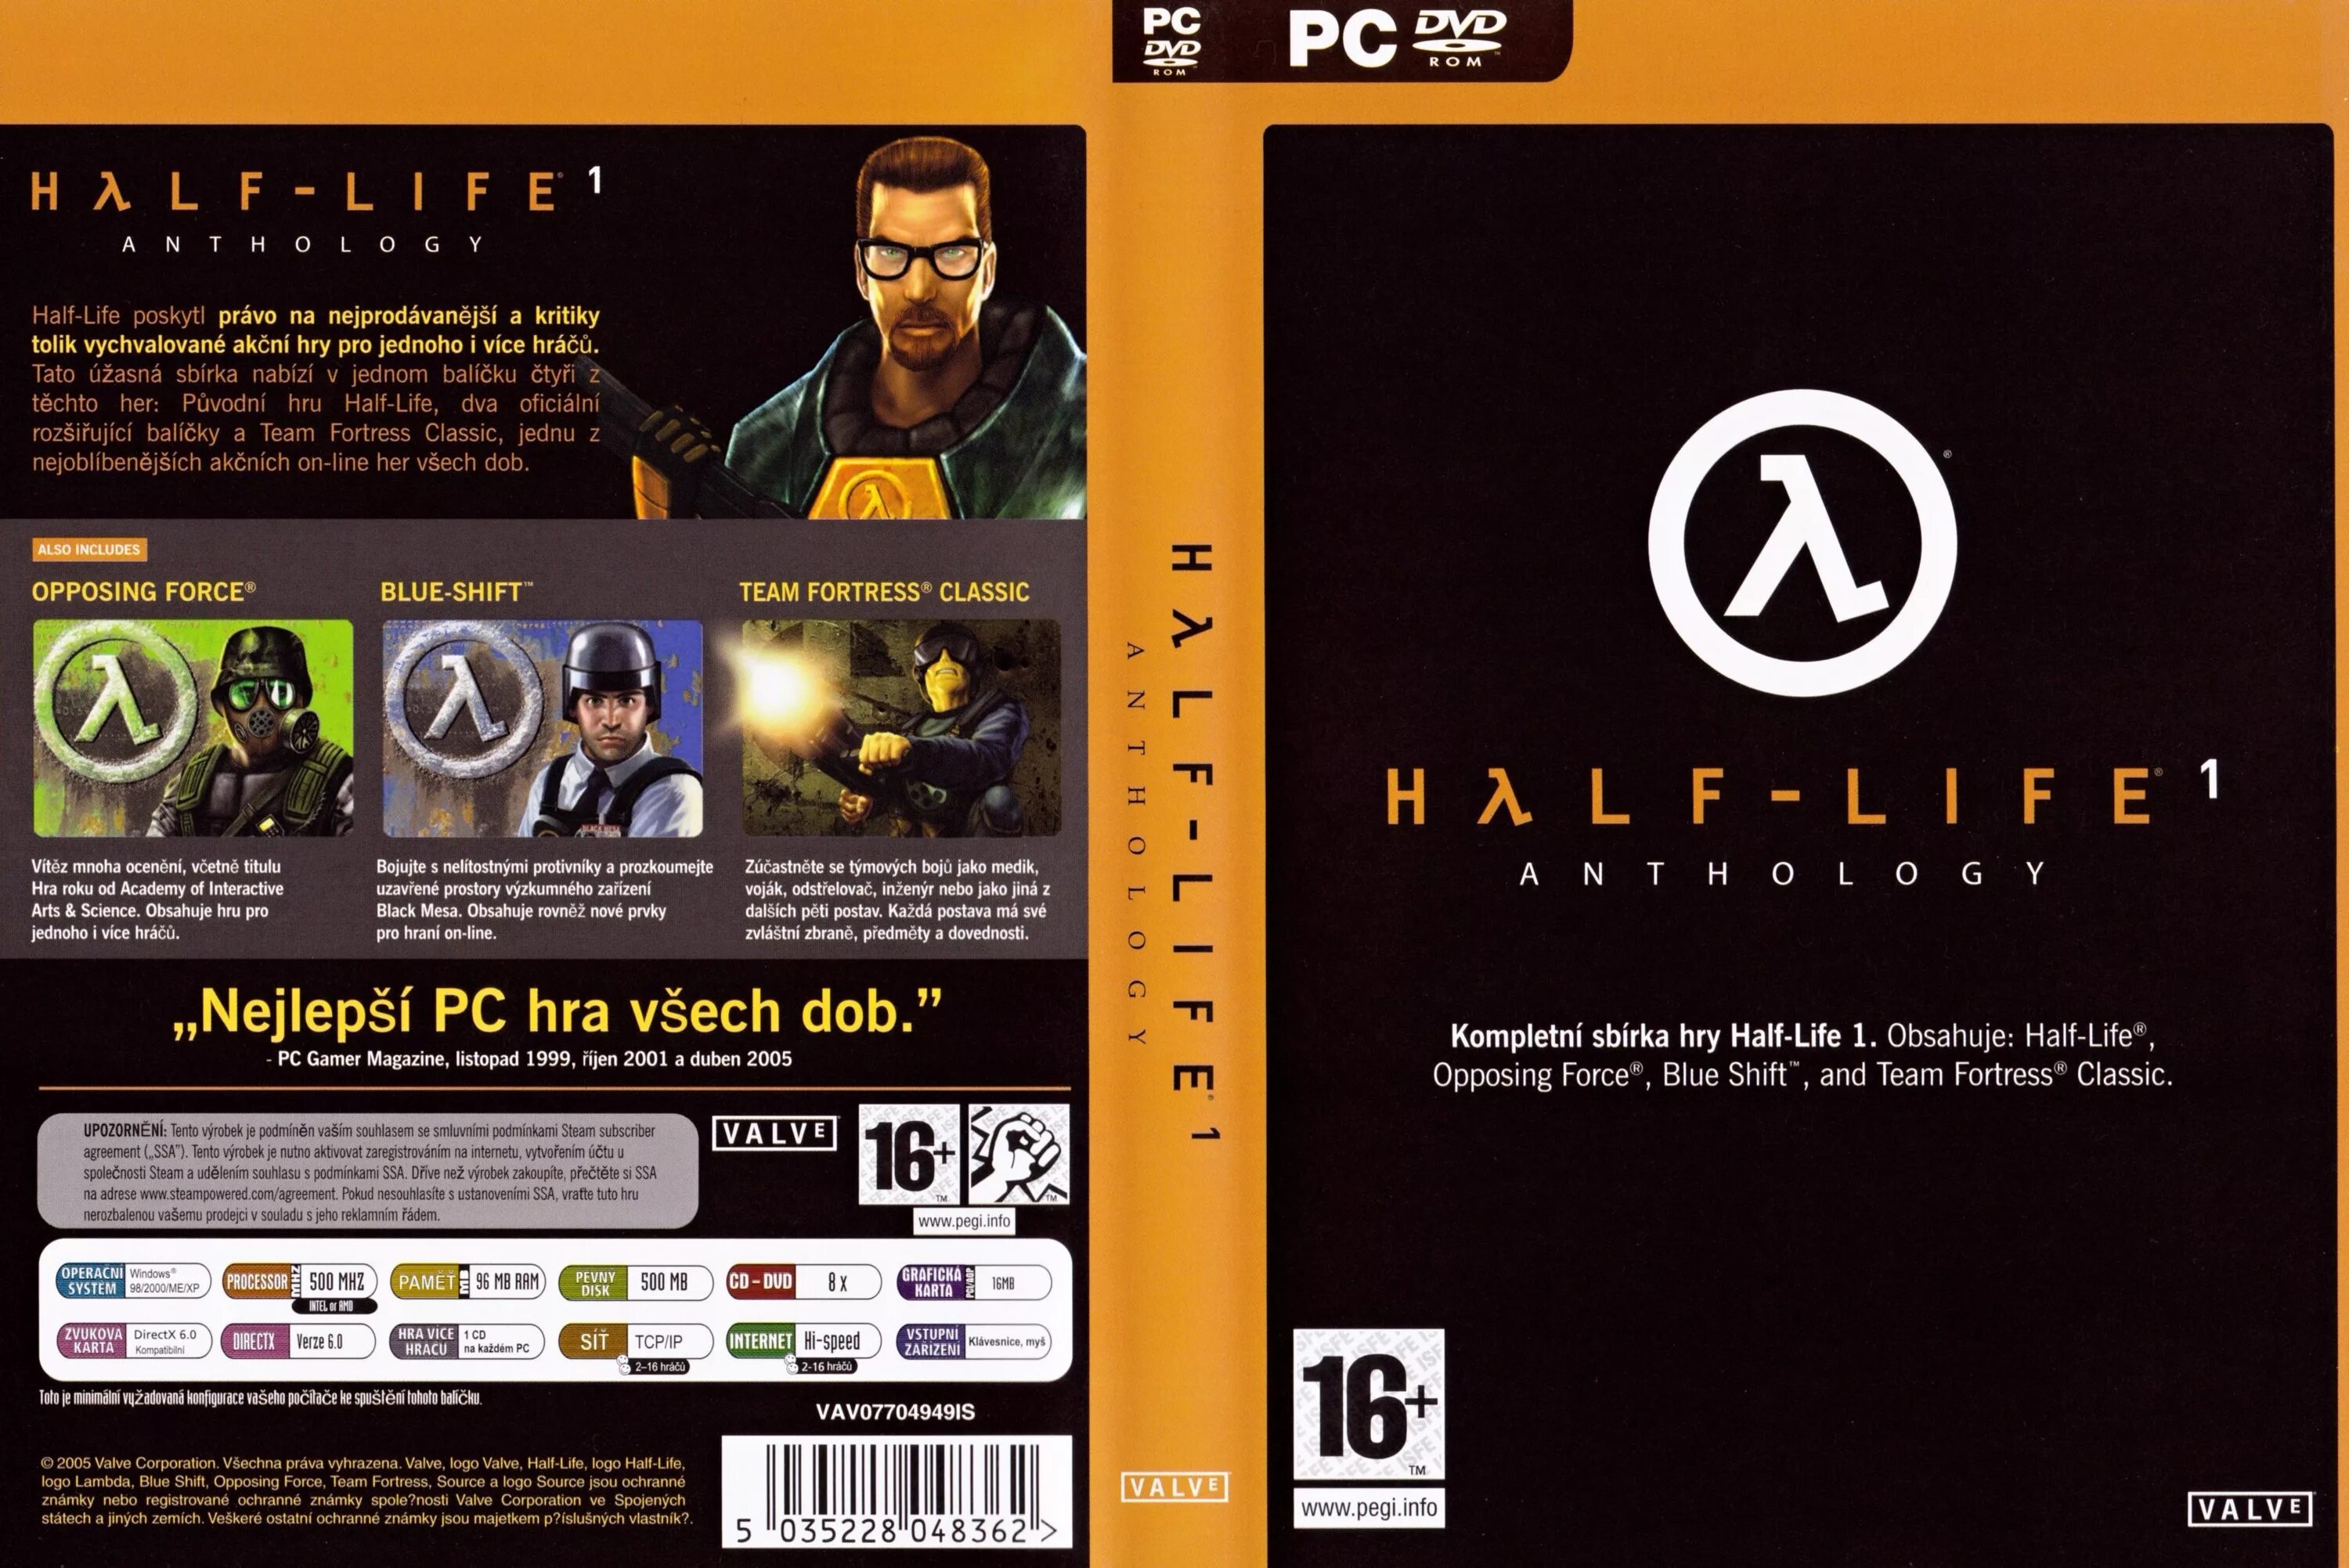 Half Life 1 обложка 1998 диск. Антология half Life 2 DVD. Half Life 2 PC диск обложка. Half Life антология диск. Half life сохранения